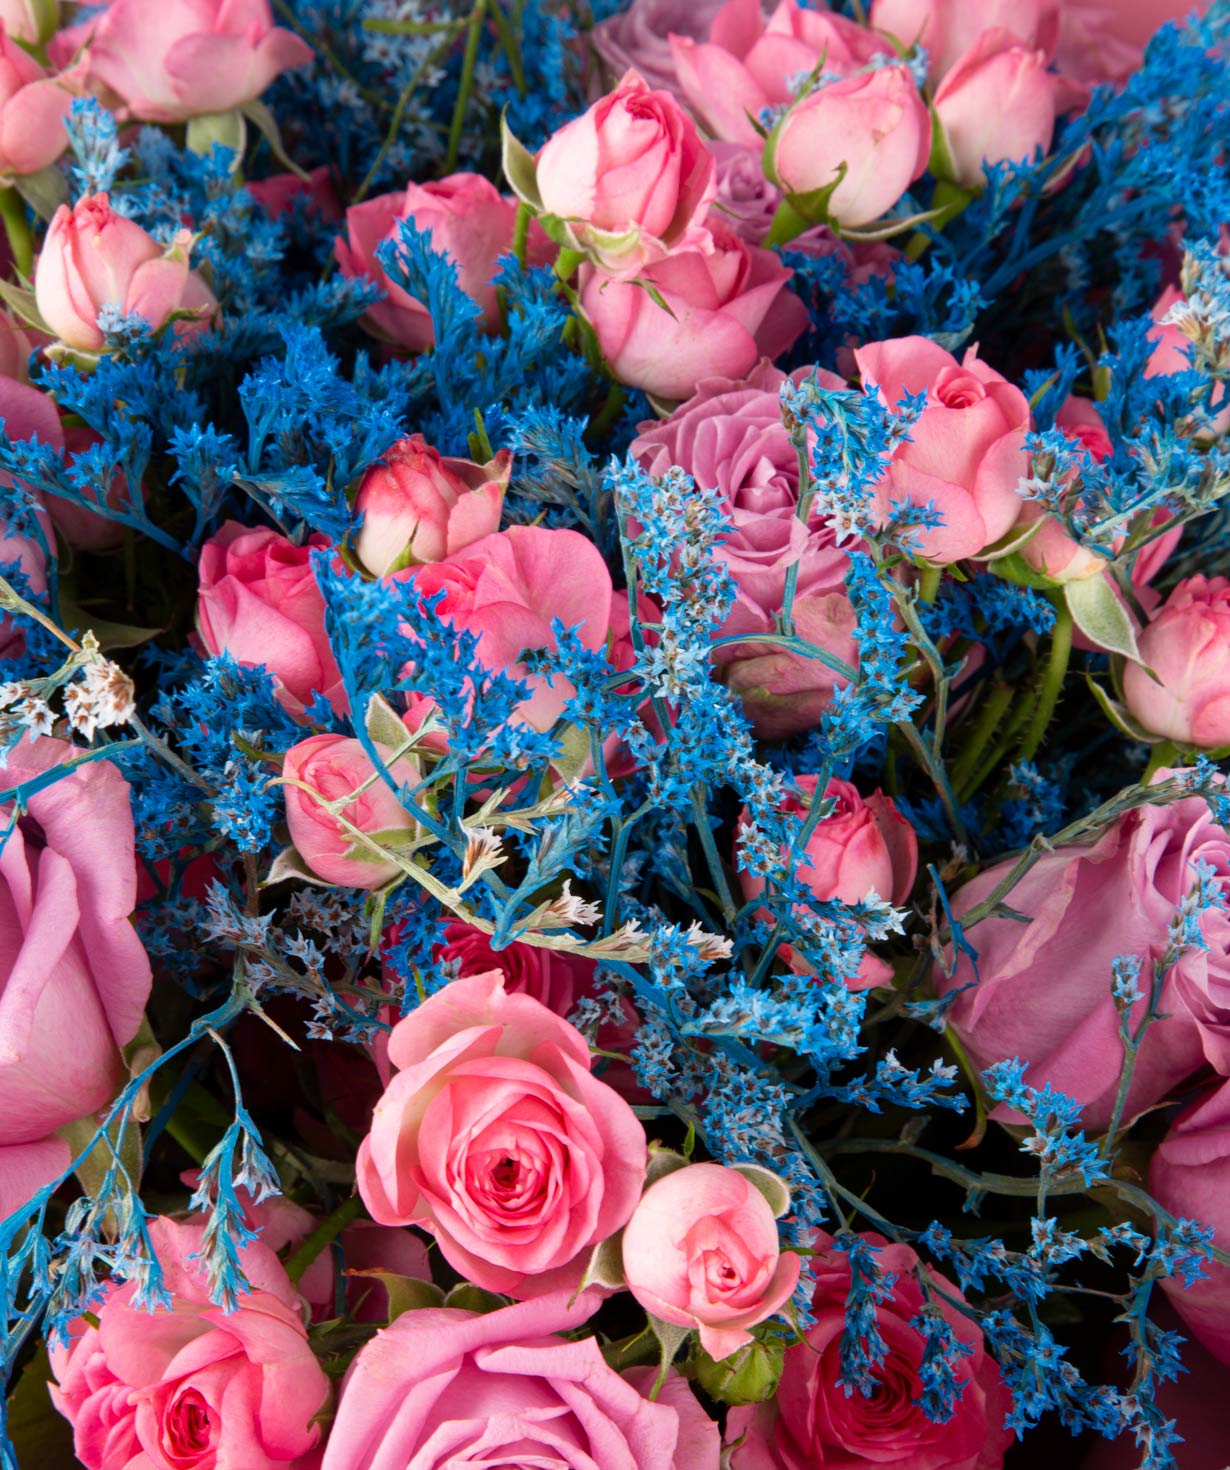 Ծաղկեփունջ «Ռաններս»  վարդերով և դաշտային ծաղիկներով